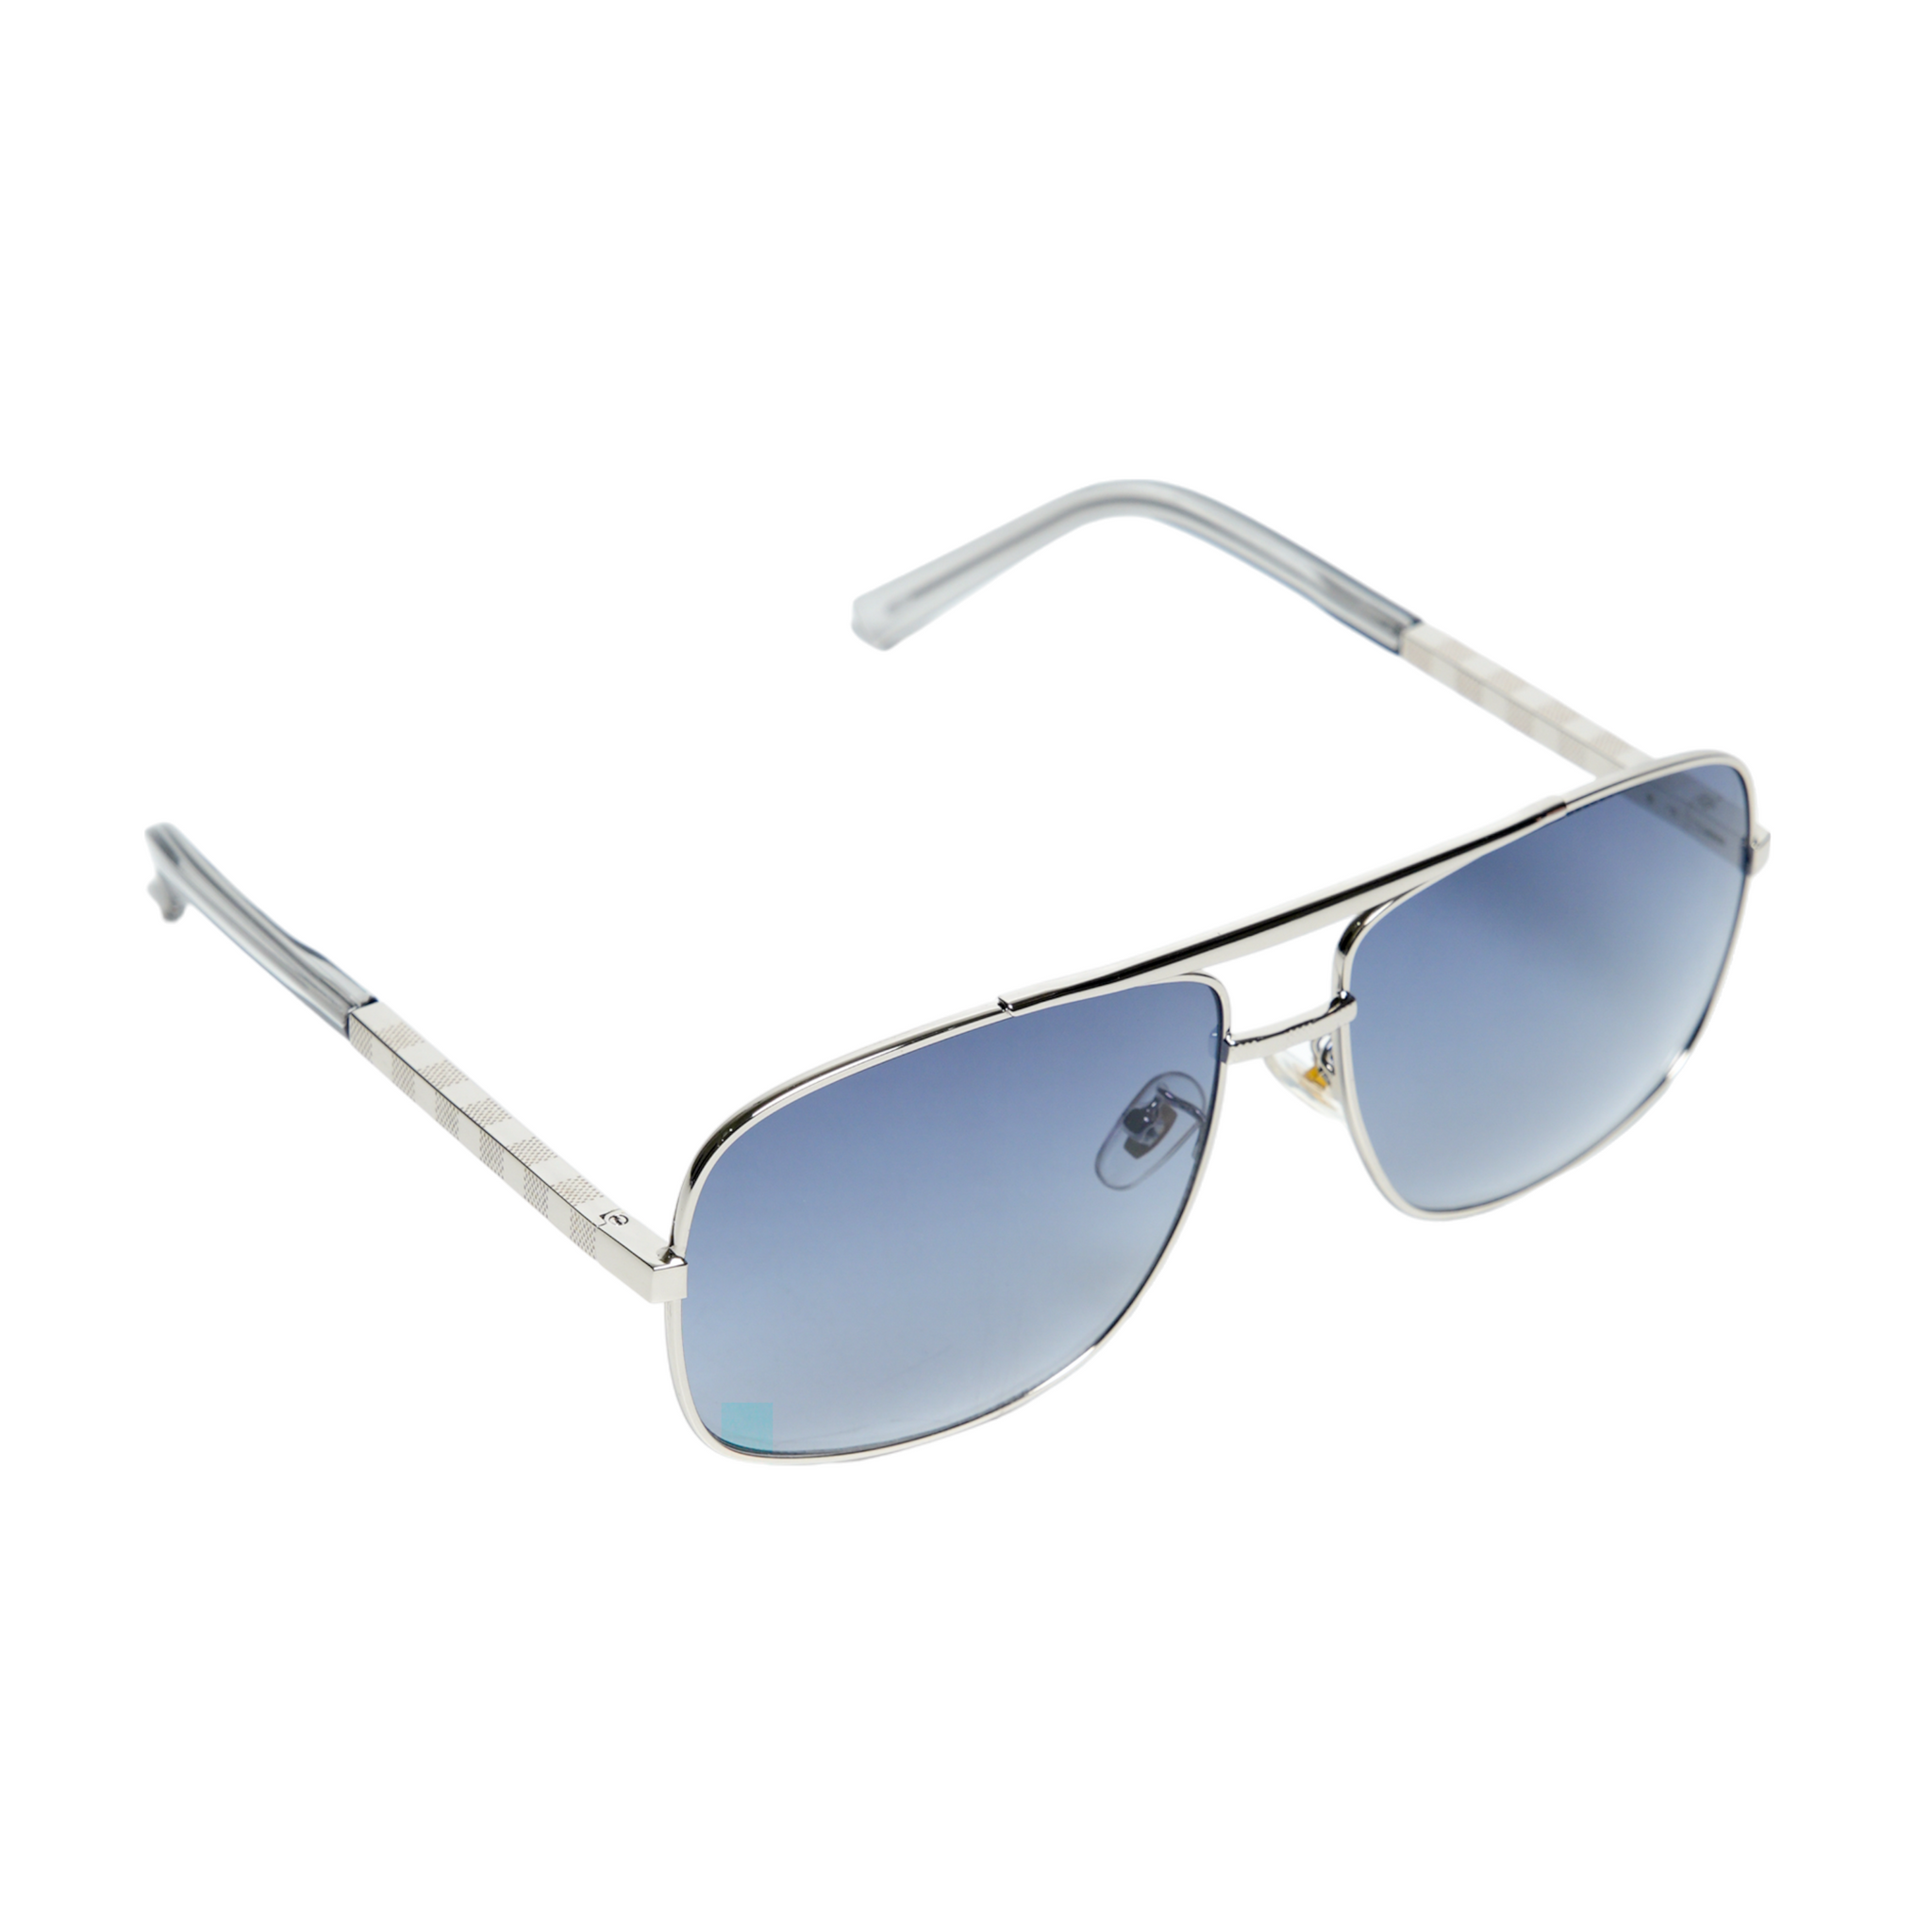 Chokore Retro Double Bridge Sunglasses with UV400 Protection (Blue & Silver)